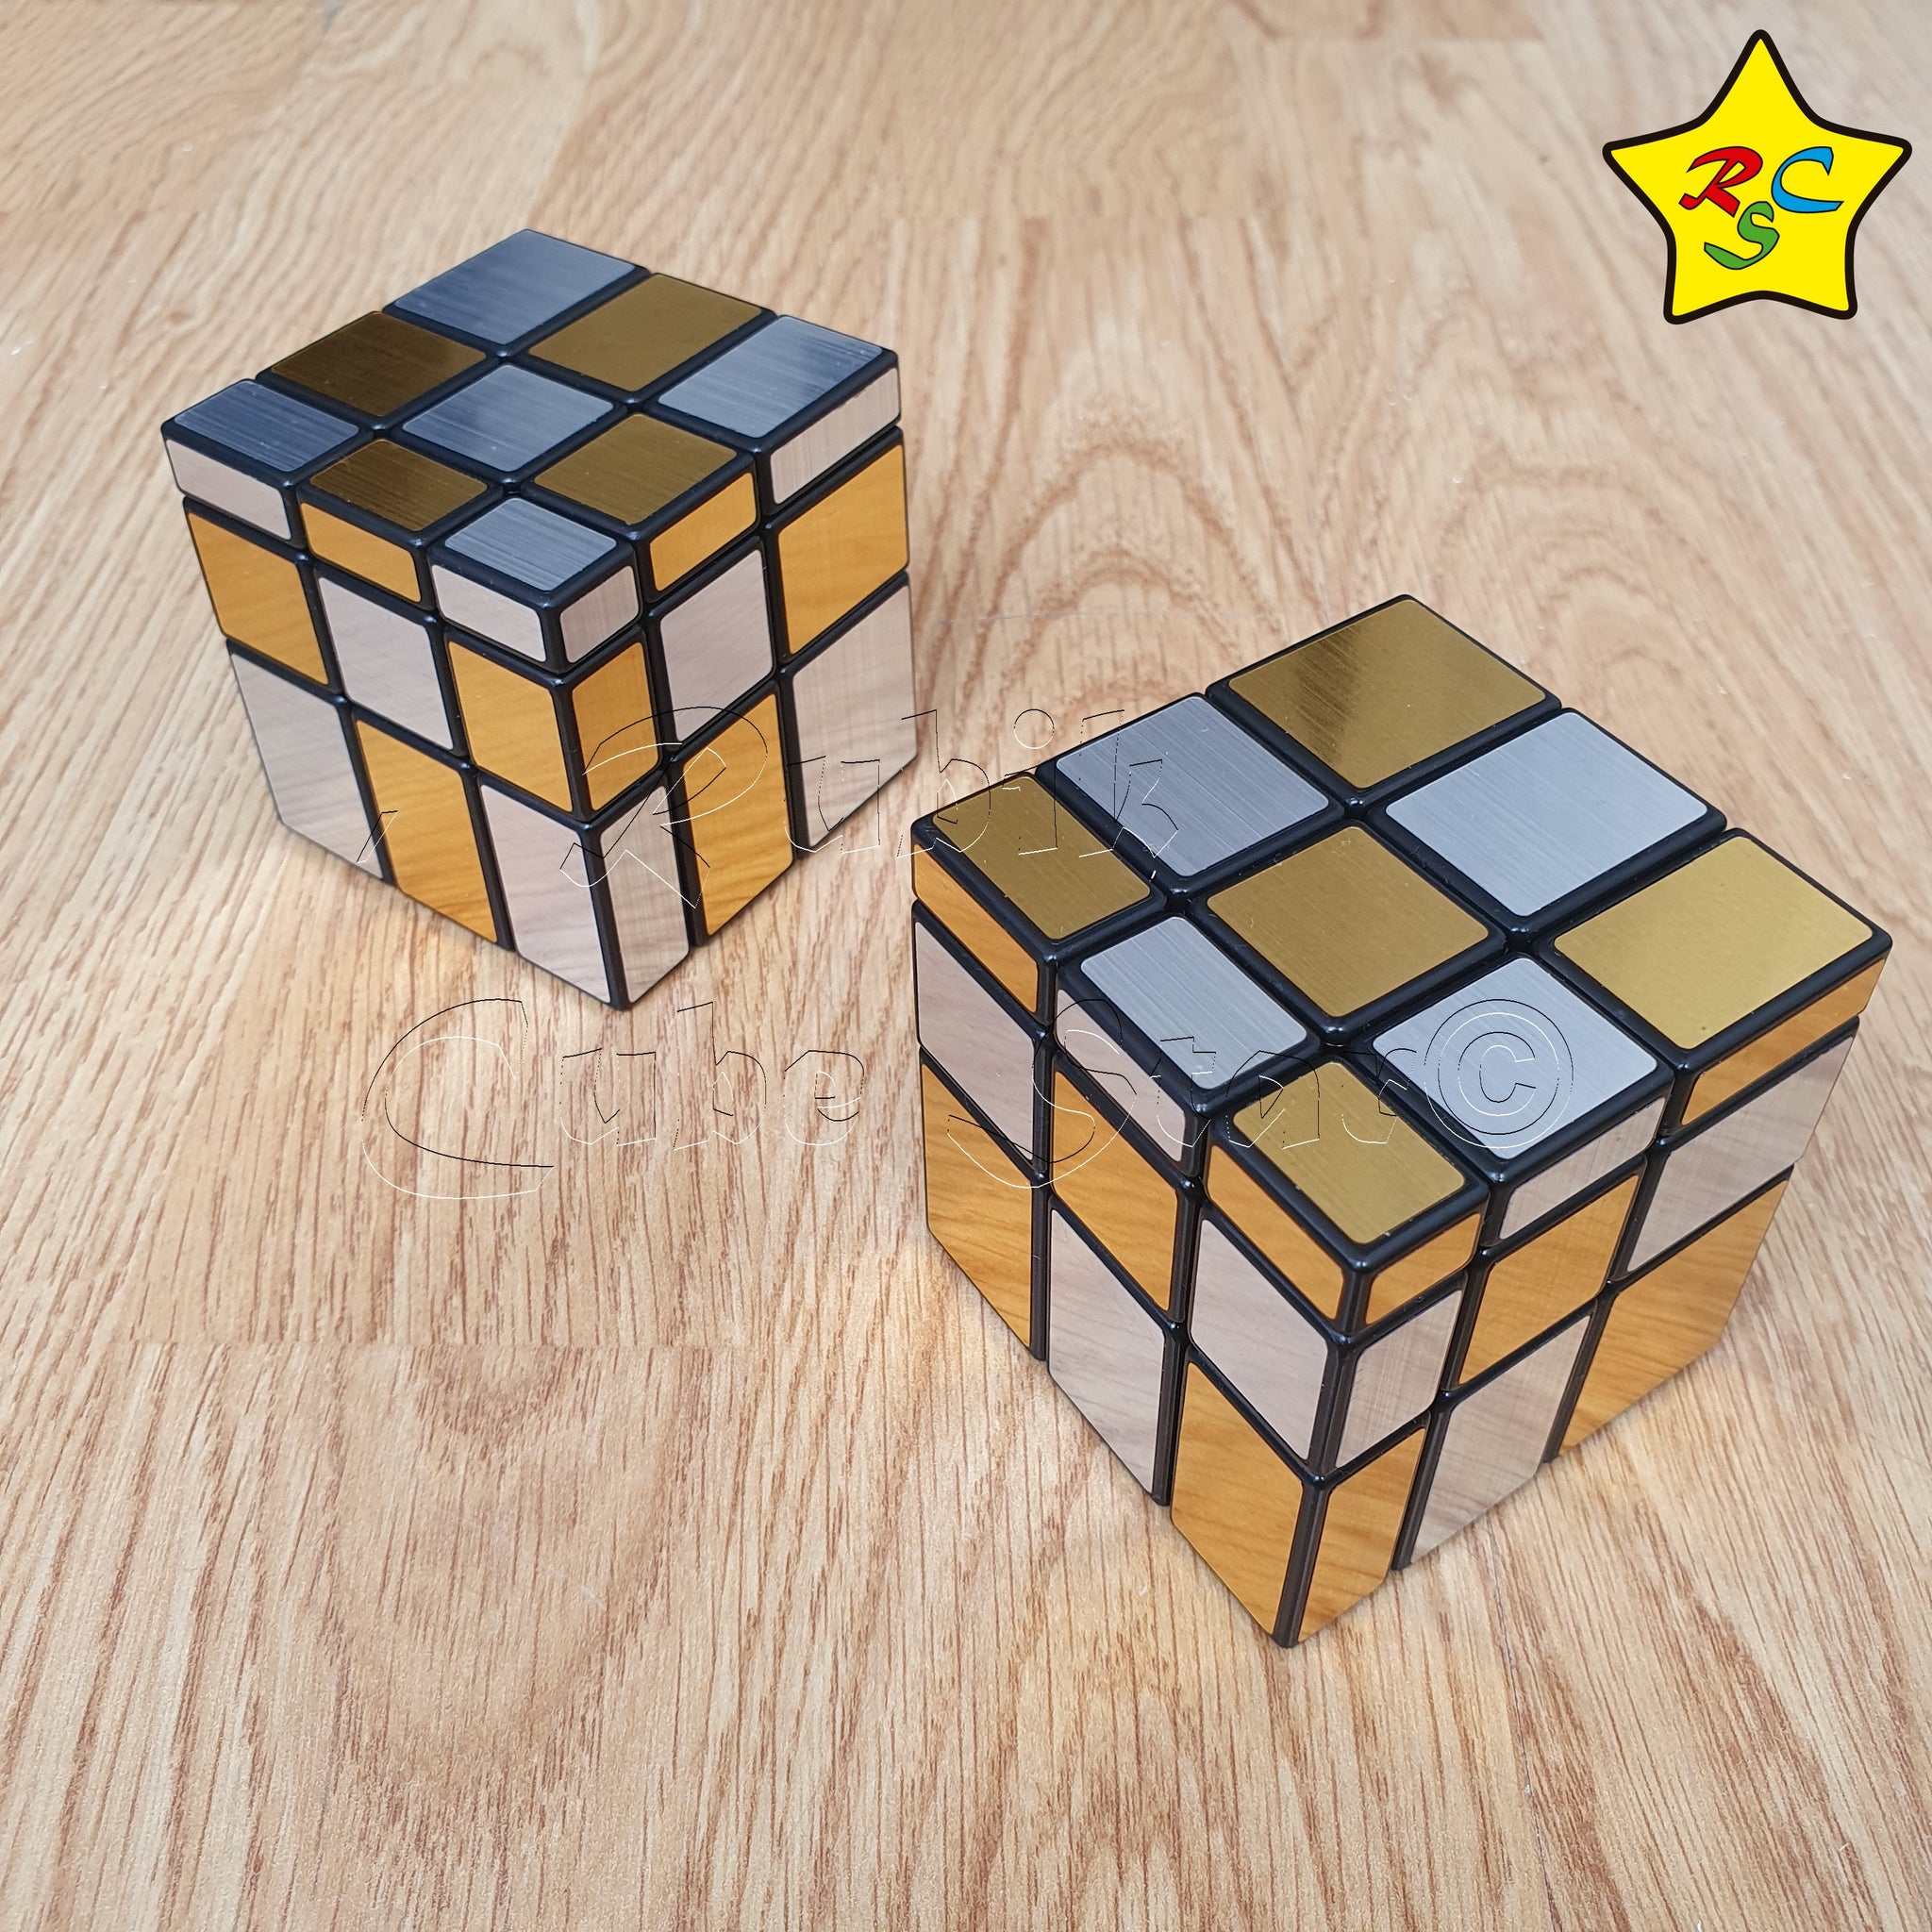 Cubo Rubik Mirror 3x3 Bicolor Mod Rcs Dorado Plateado Espejo Rubik